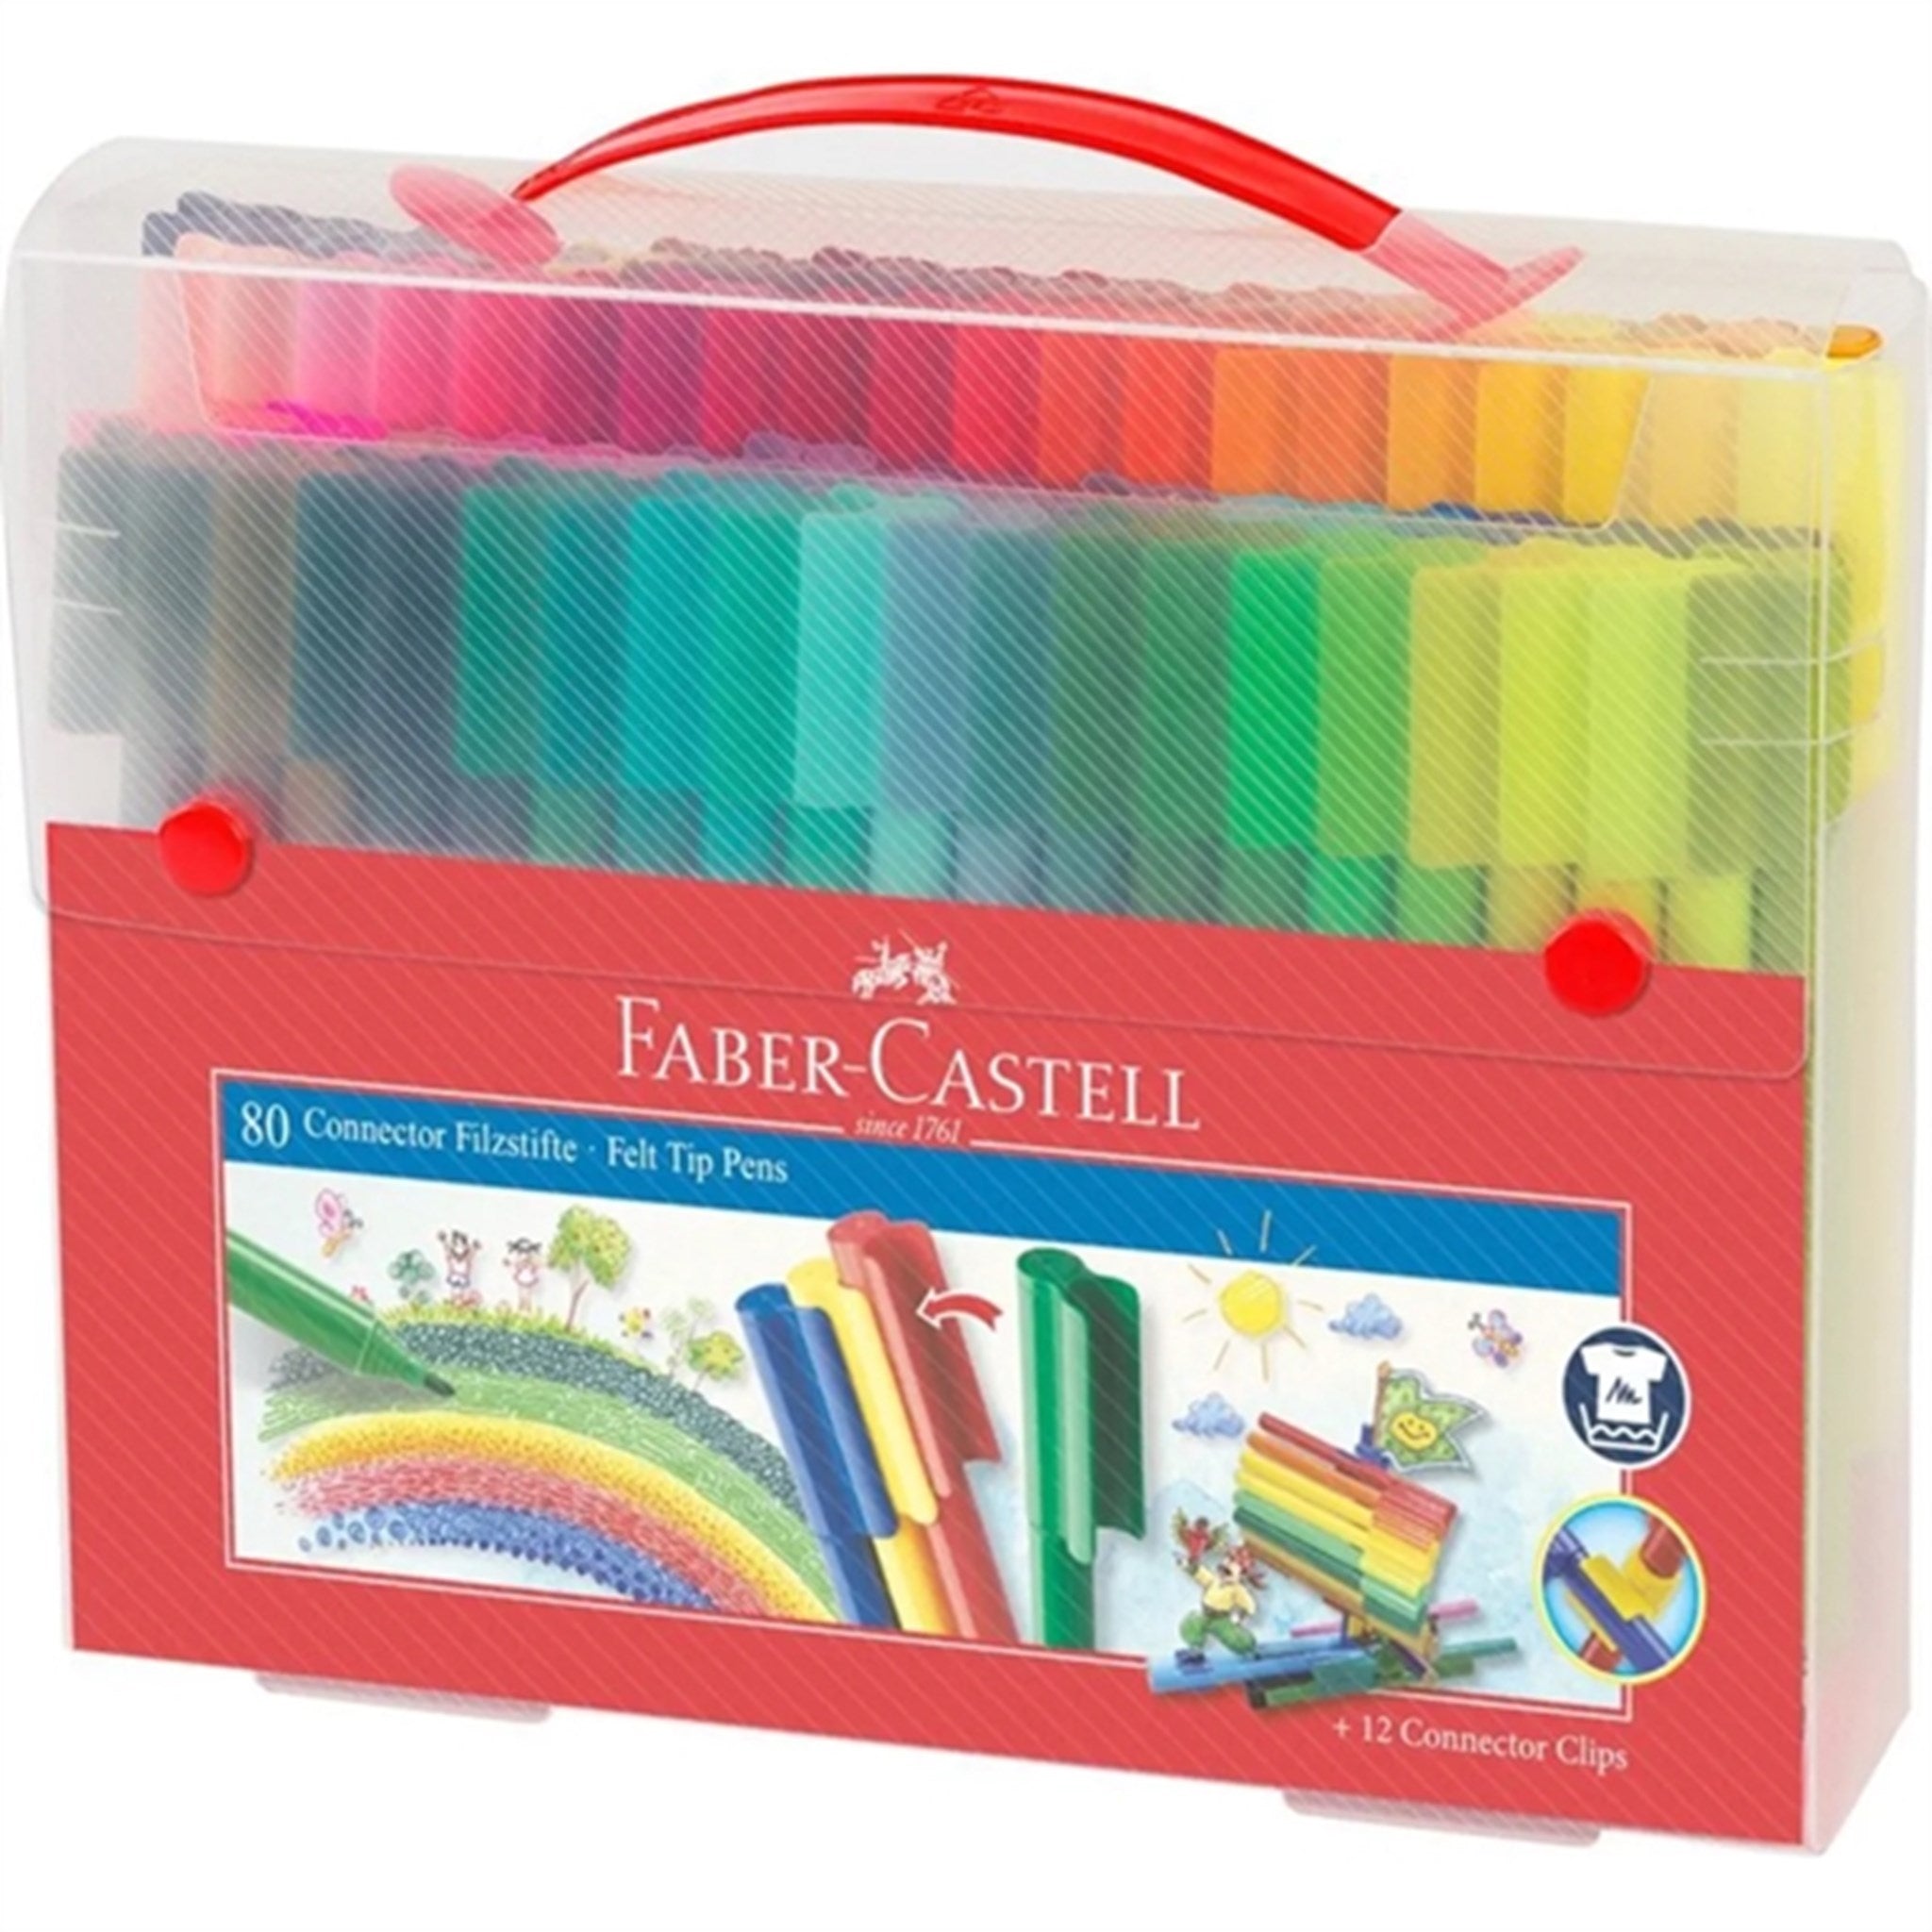 Faber Castell连接器标记套装80支为您提供了一个完整的艺术工具箱，供艺术创作和创意项目使用